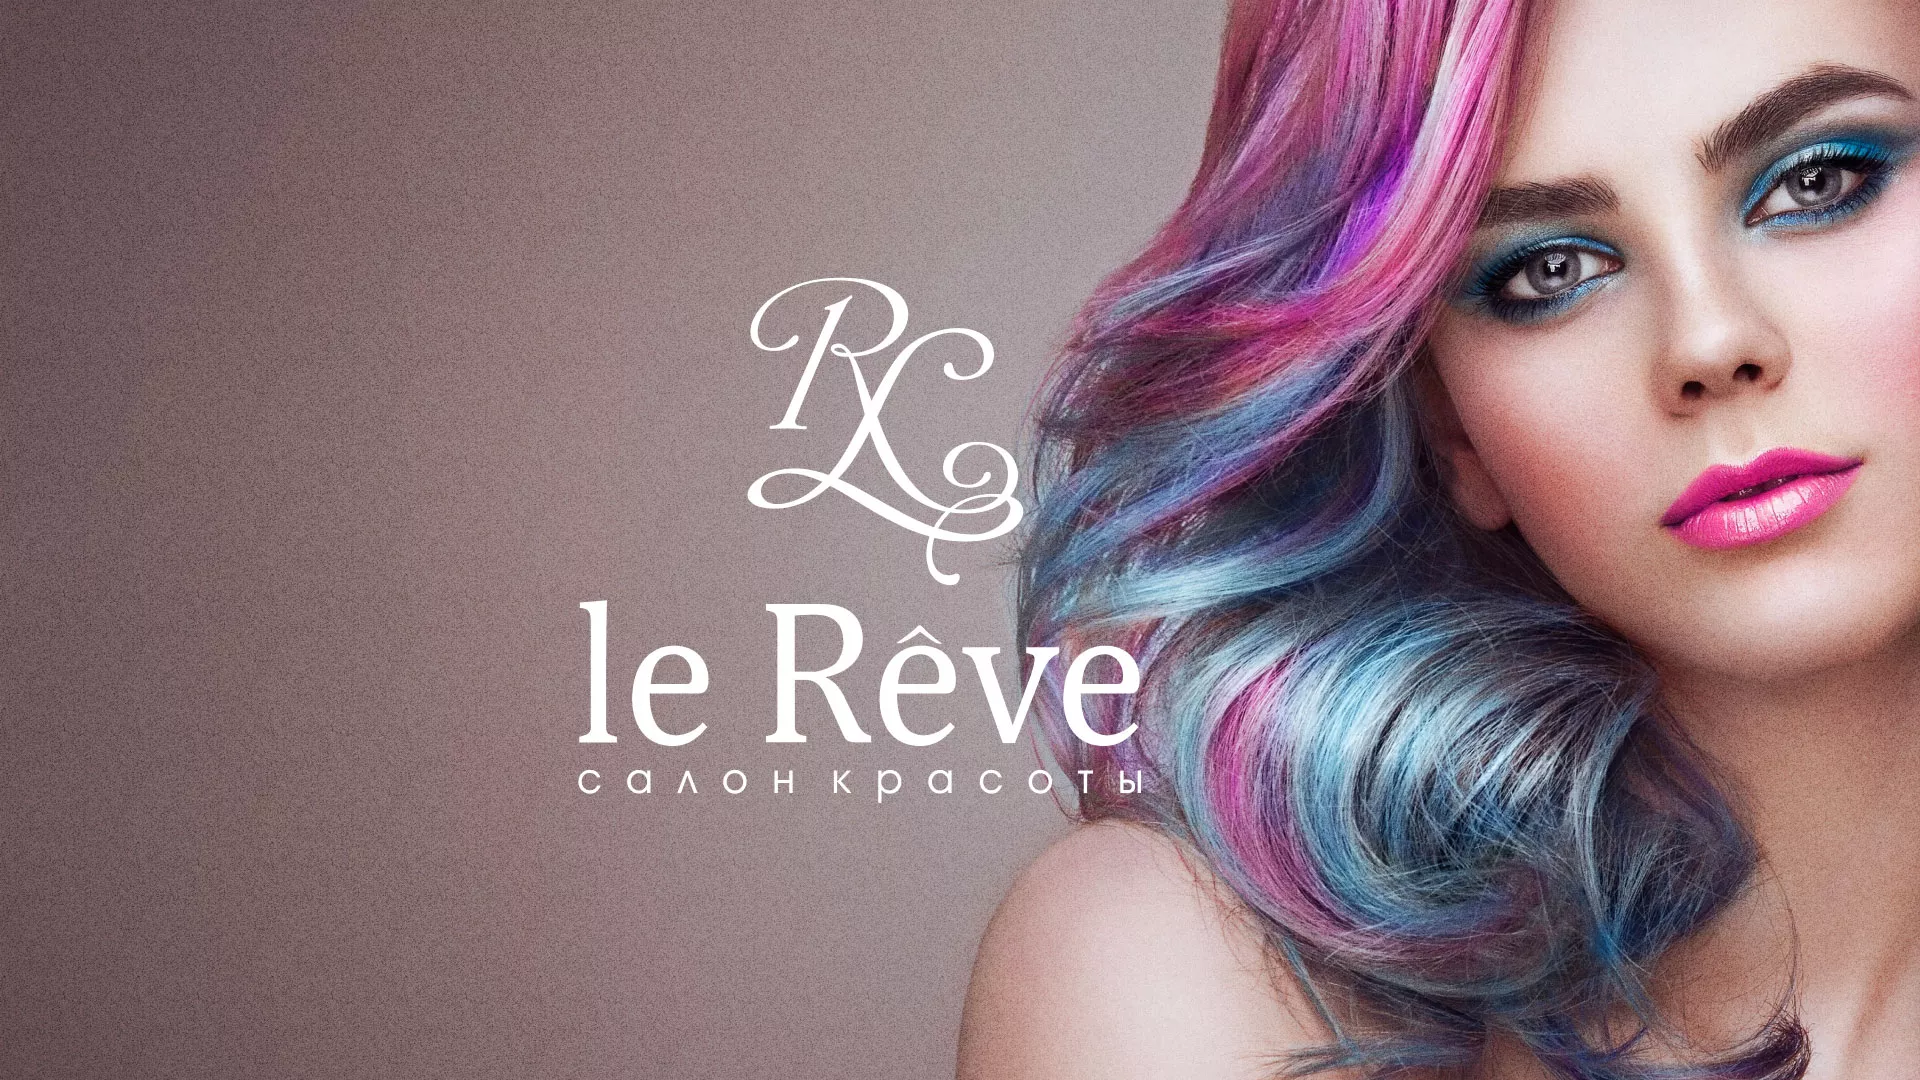 Создание сайта для салона красоты «Le Reve» в Мамадыше